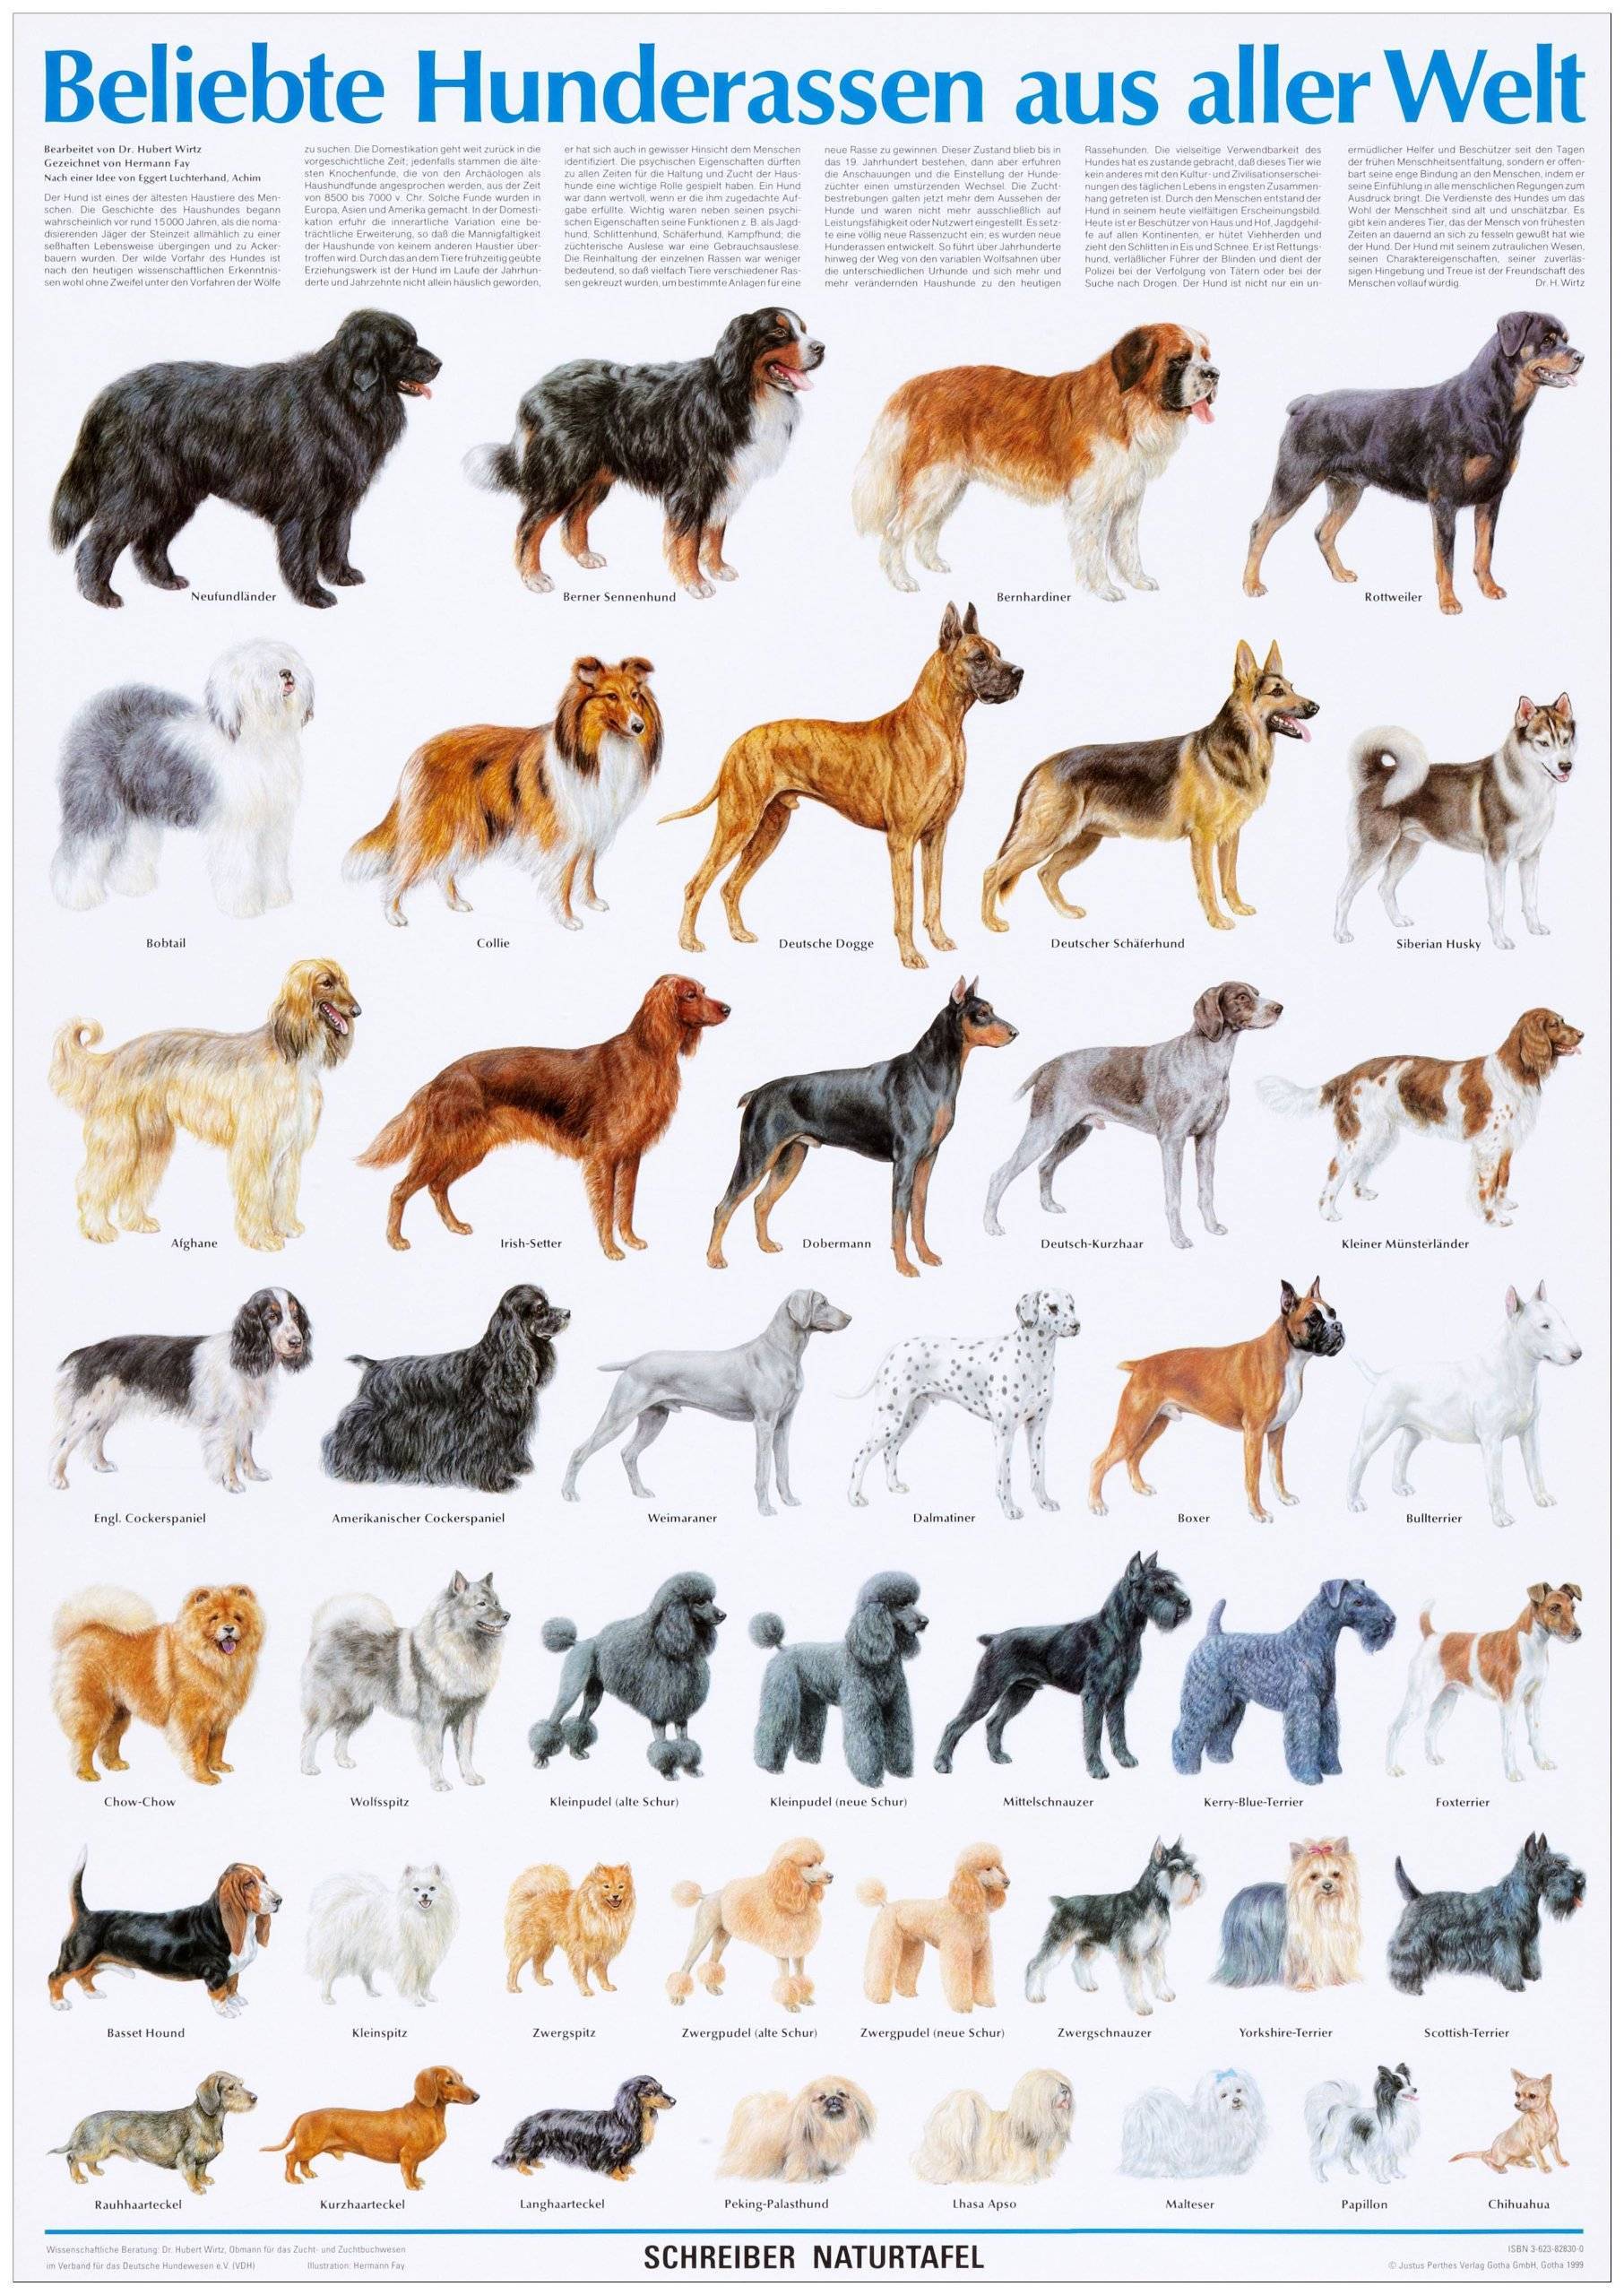 Русские породы собак